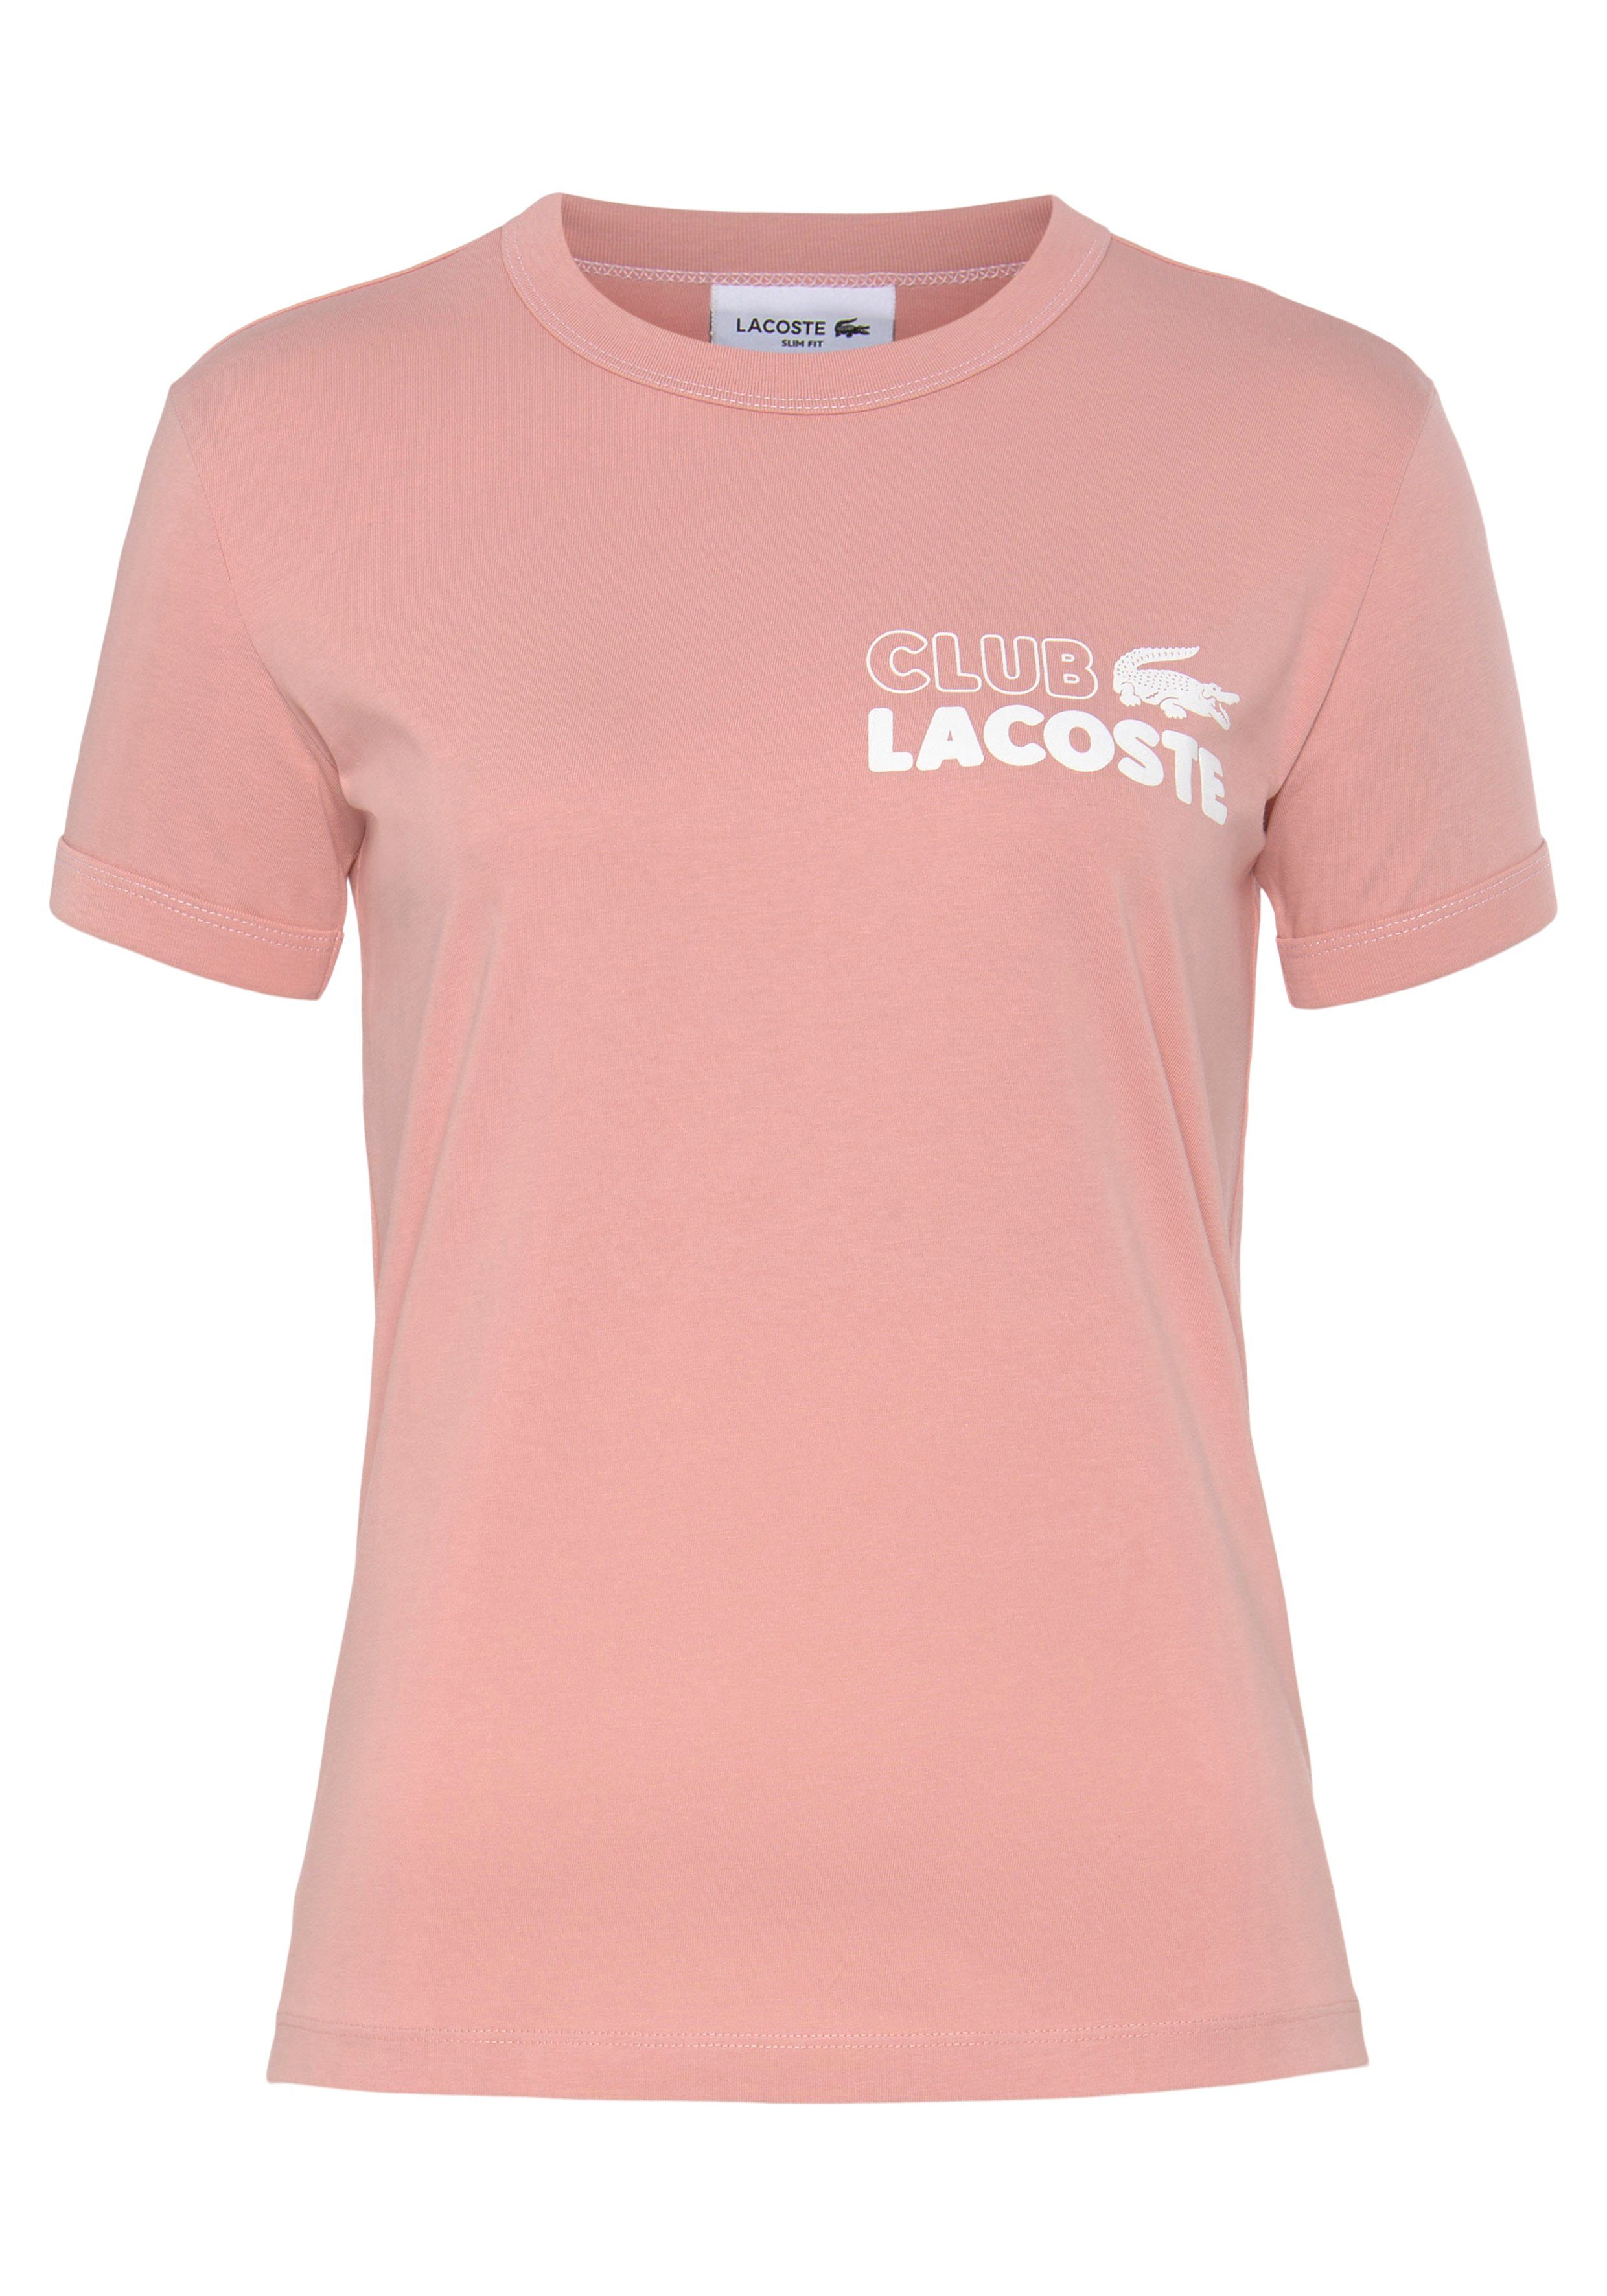 preisbewertung Lacoste T-Shirt mit der Brust Logoprägung auf